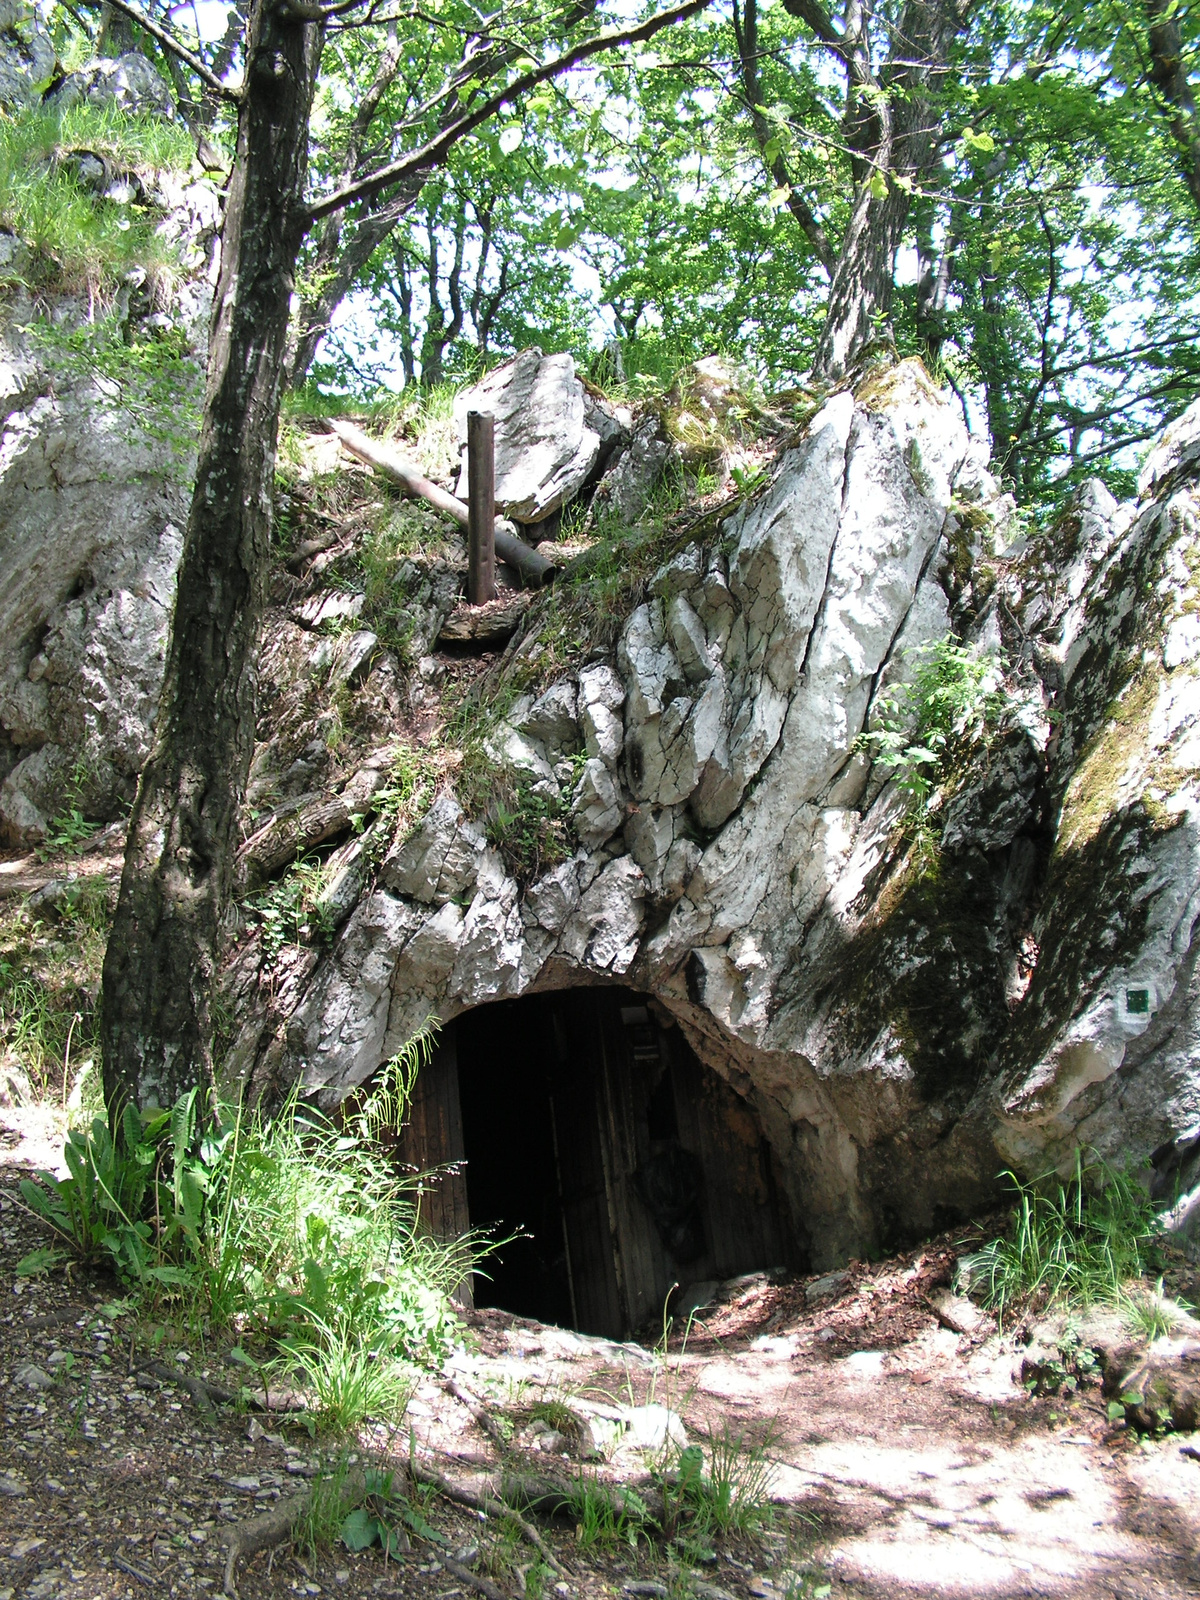 155 Kéménnyel rendelkező Cserepeskői-barlang